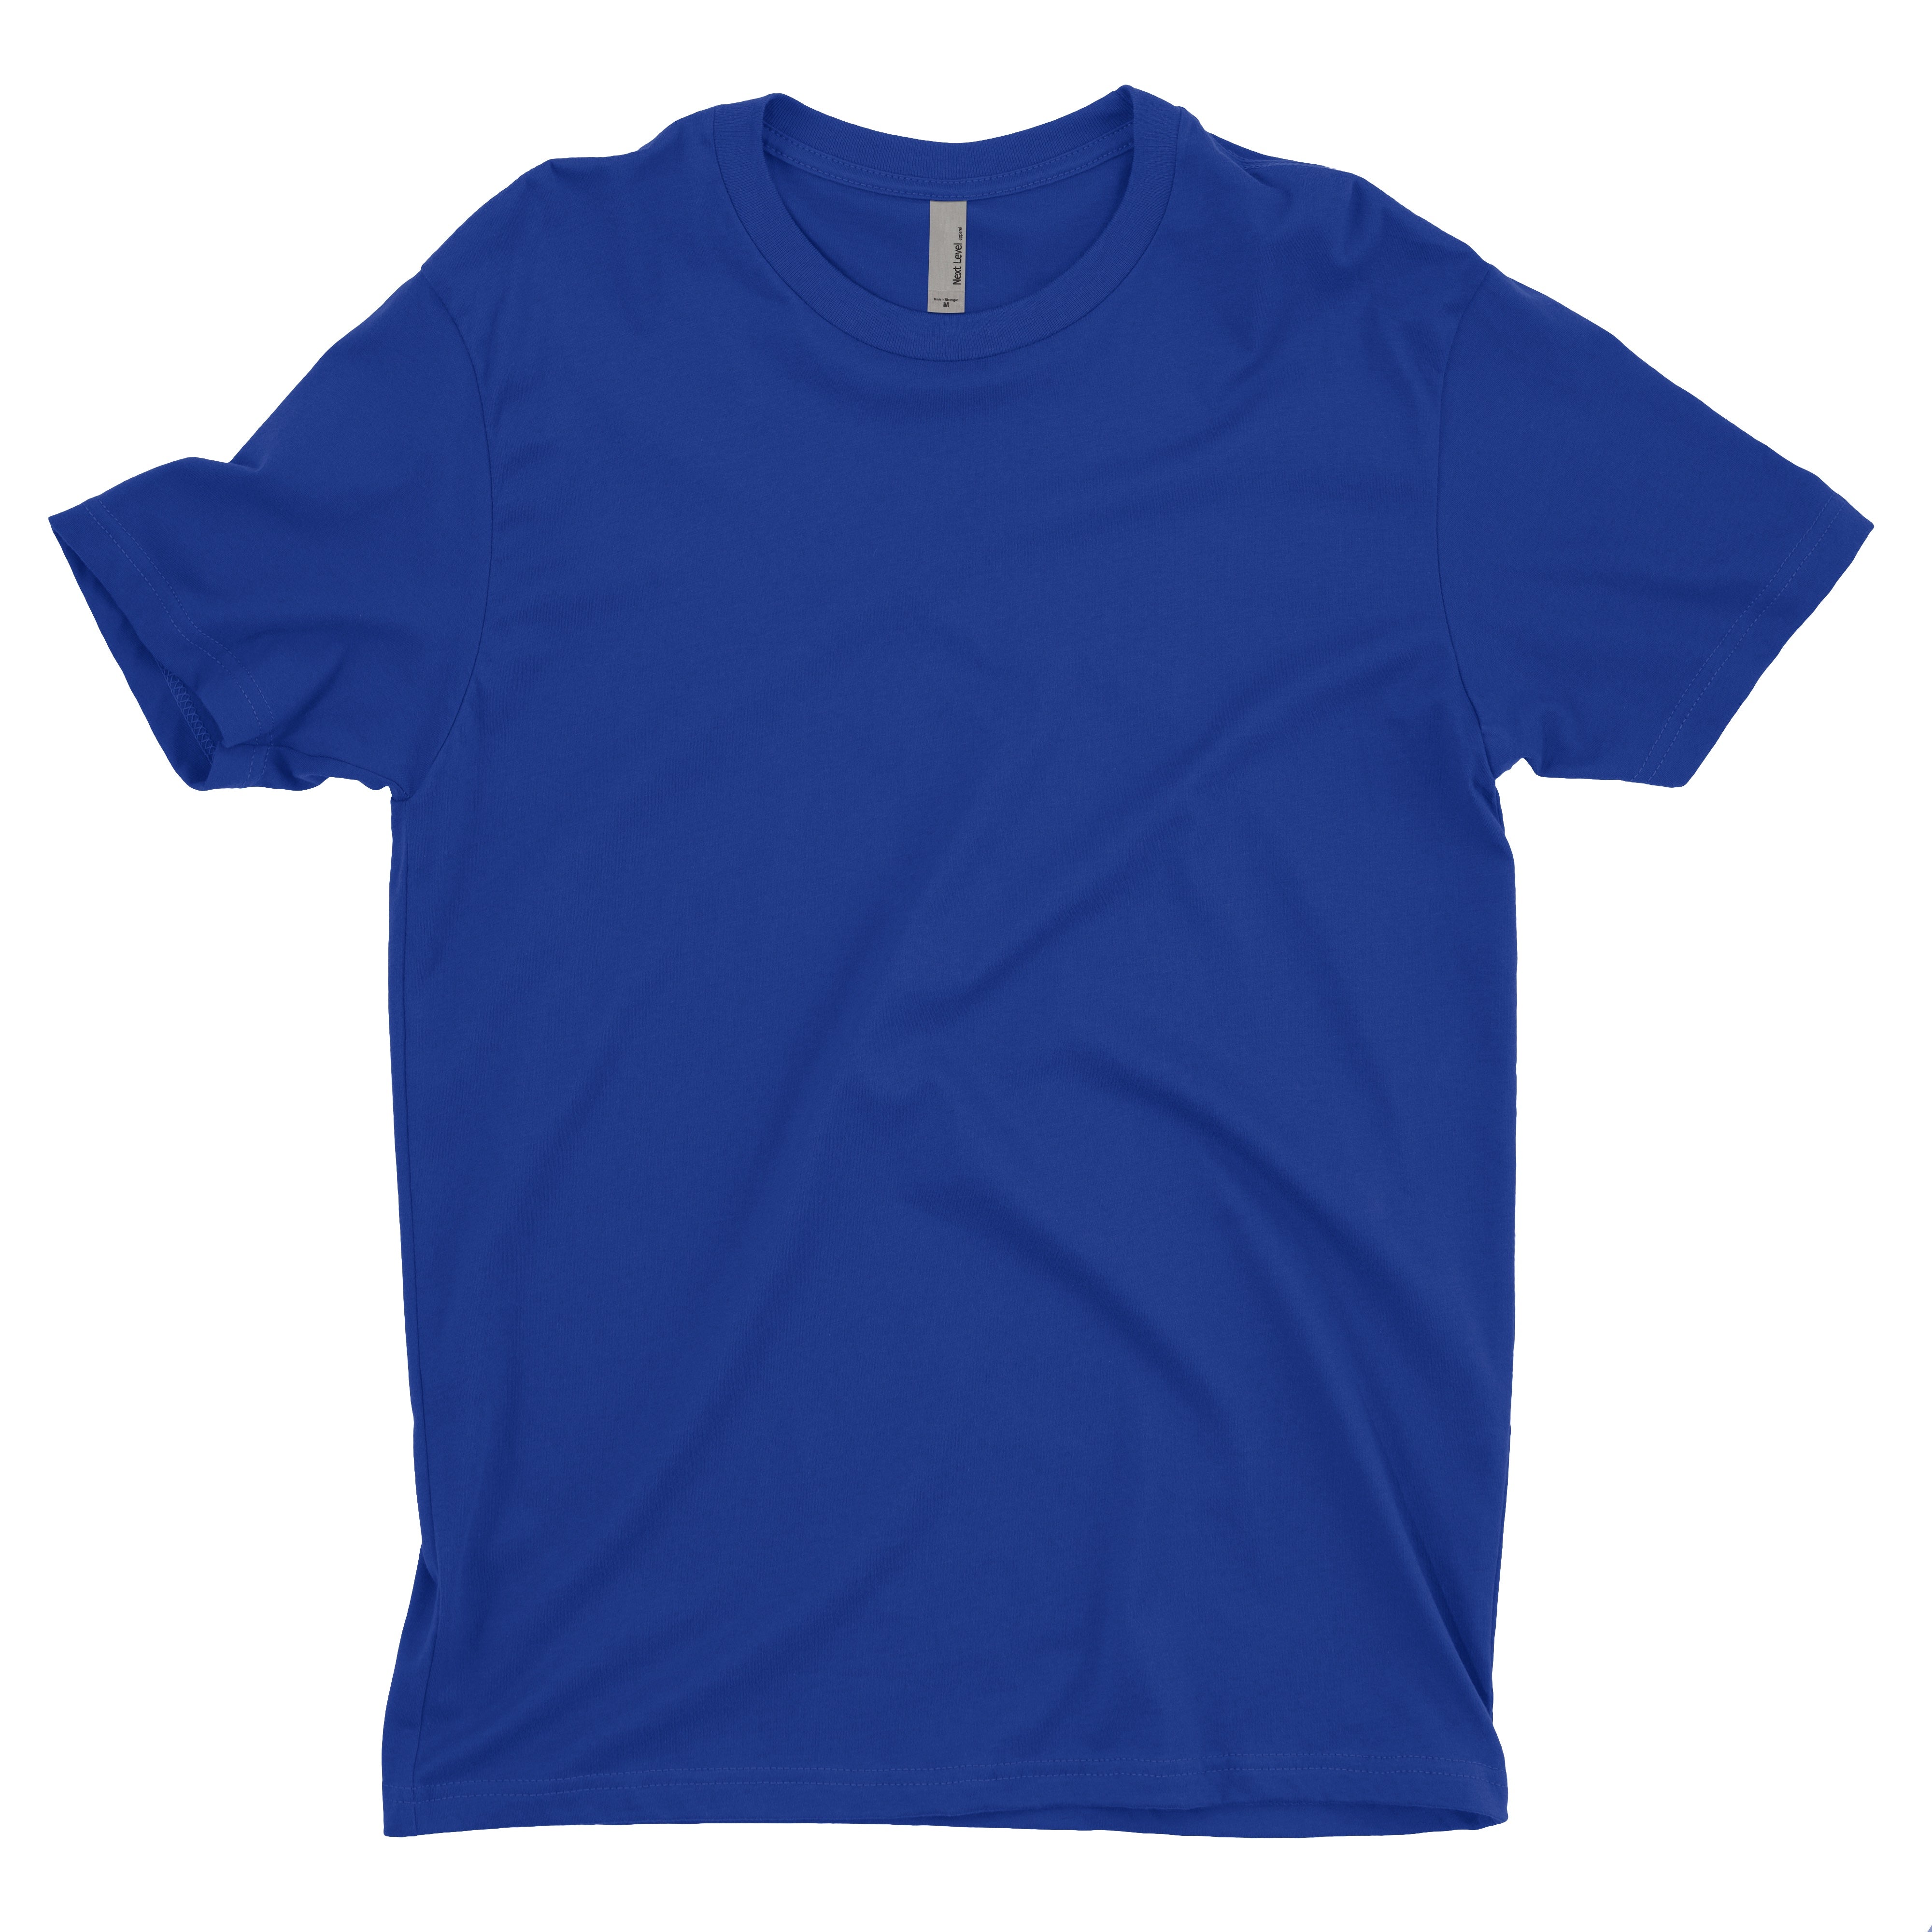 Soft Cotton Short Sleeve Royal Blue Custom T Shirt